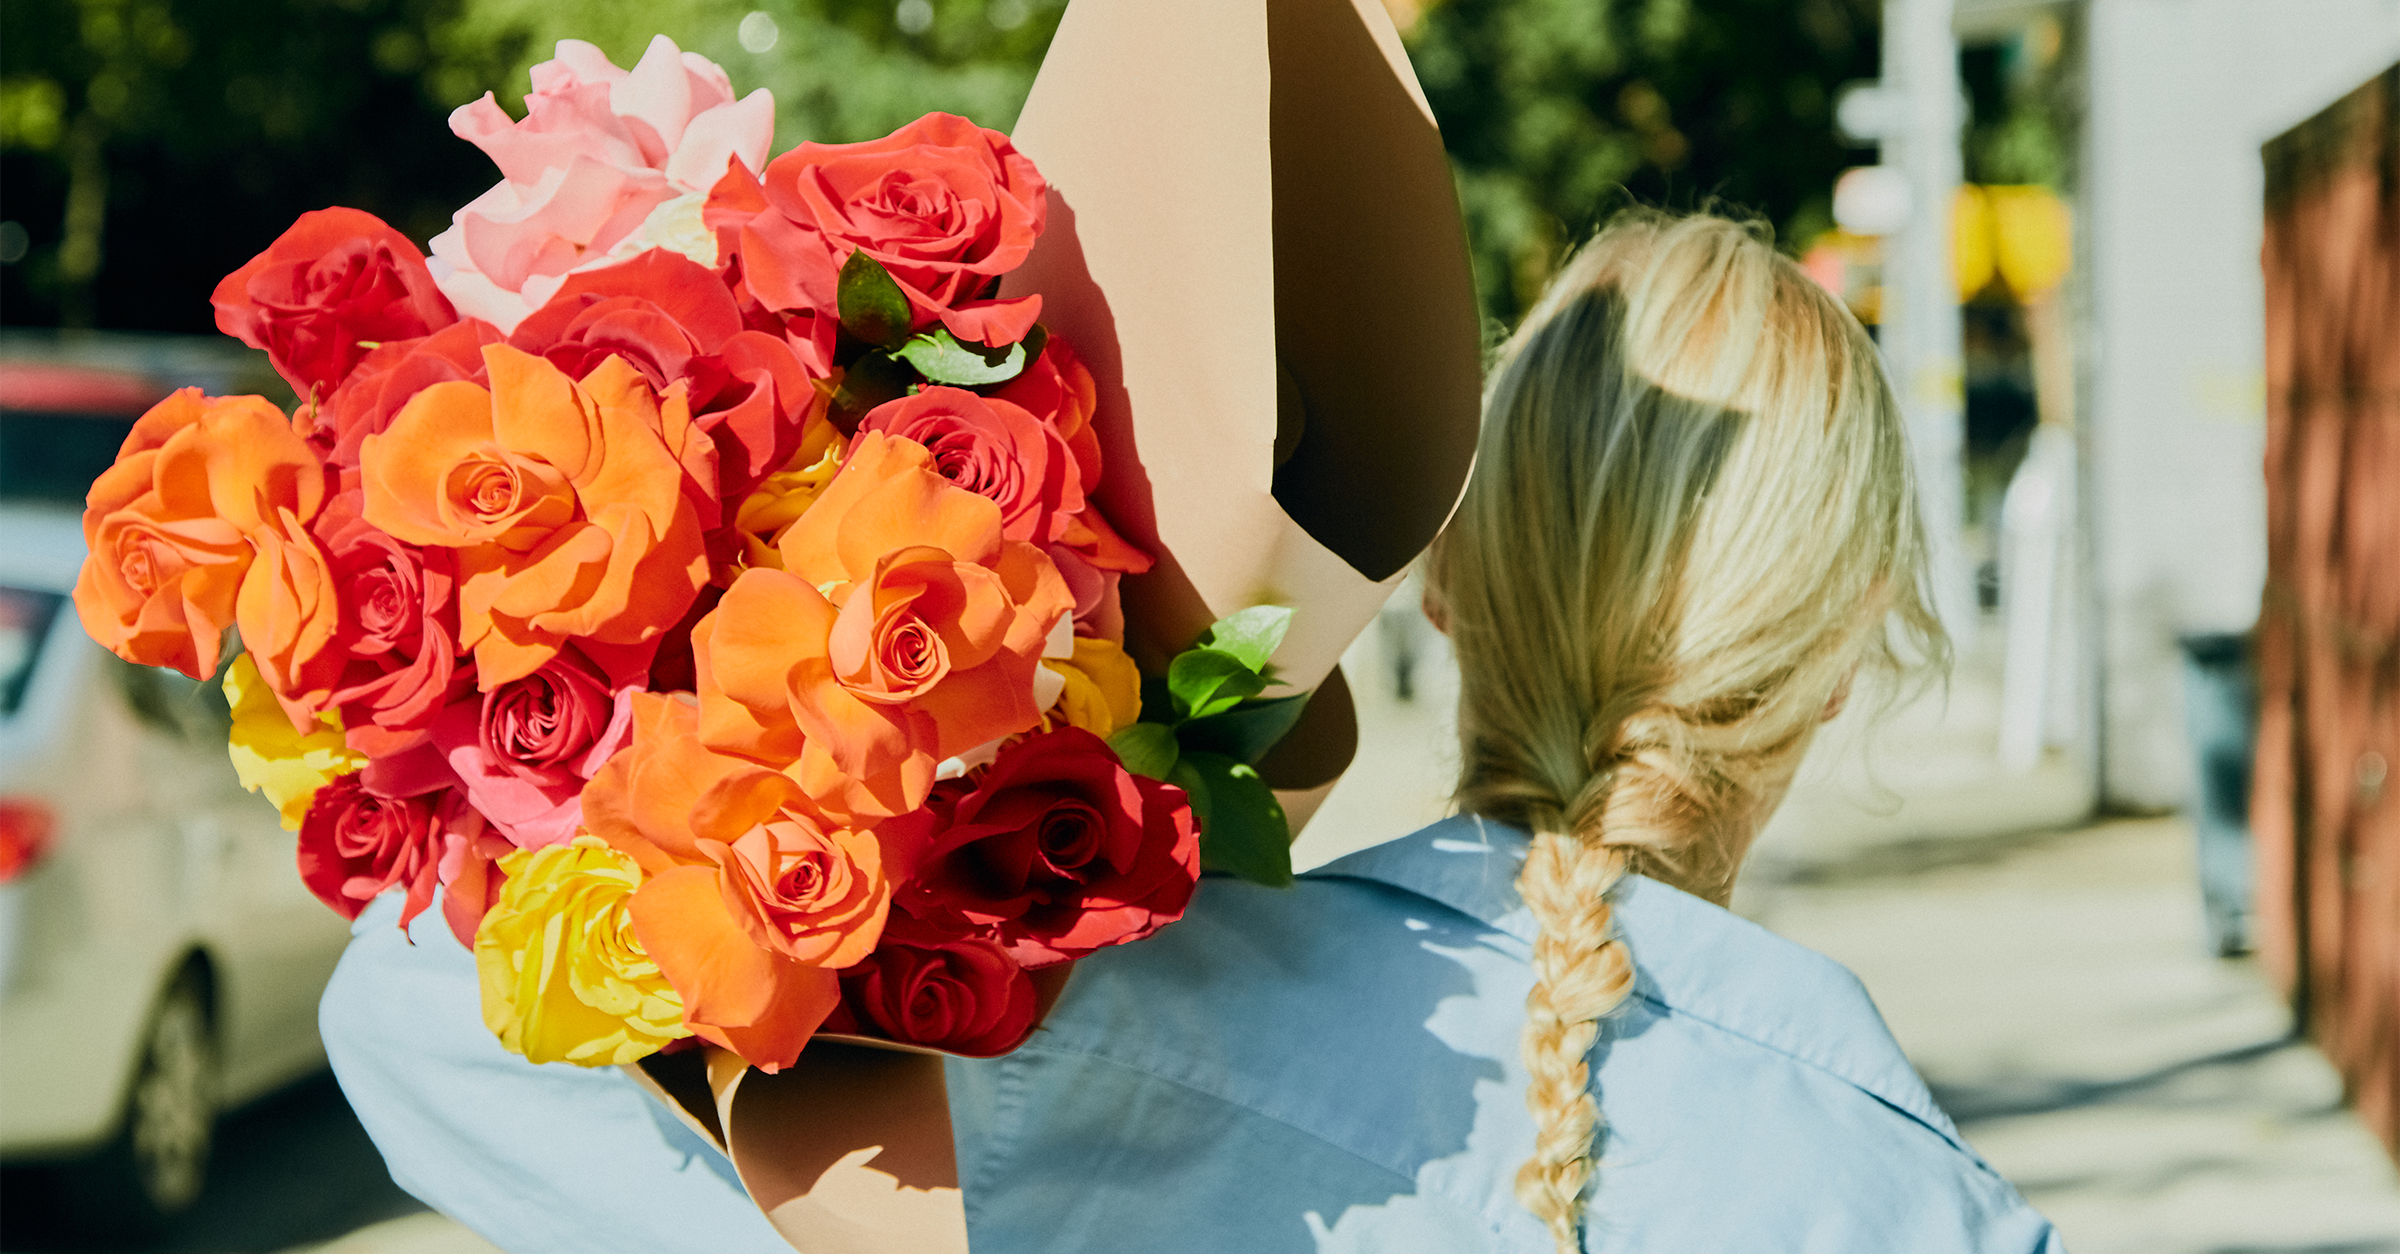 Dostawa róż: wyślij bukiety róż | Proflowers